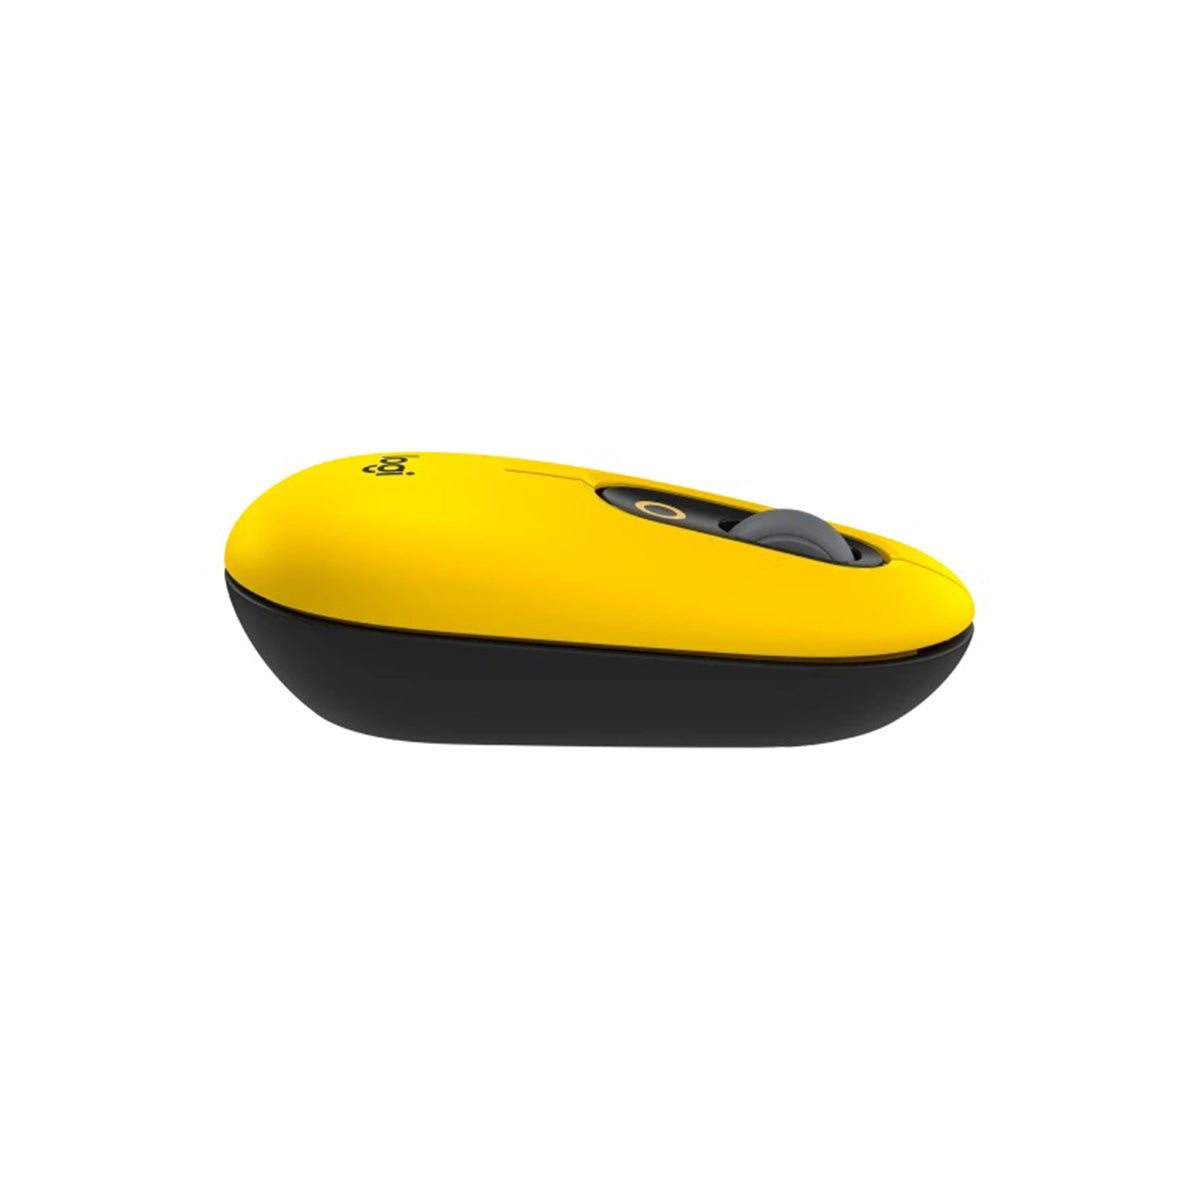 Logitech POP Wireless Mouse